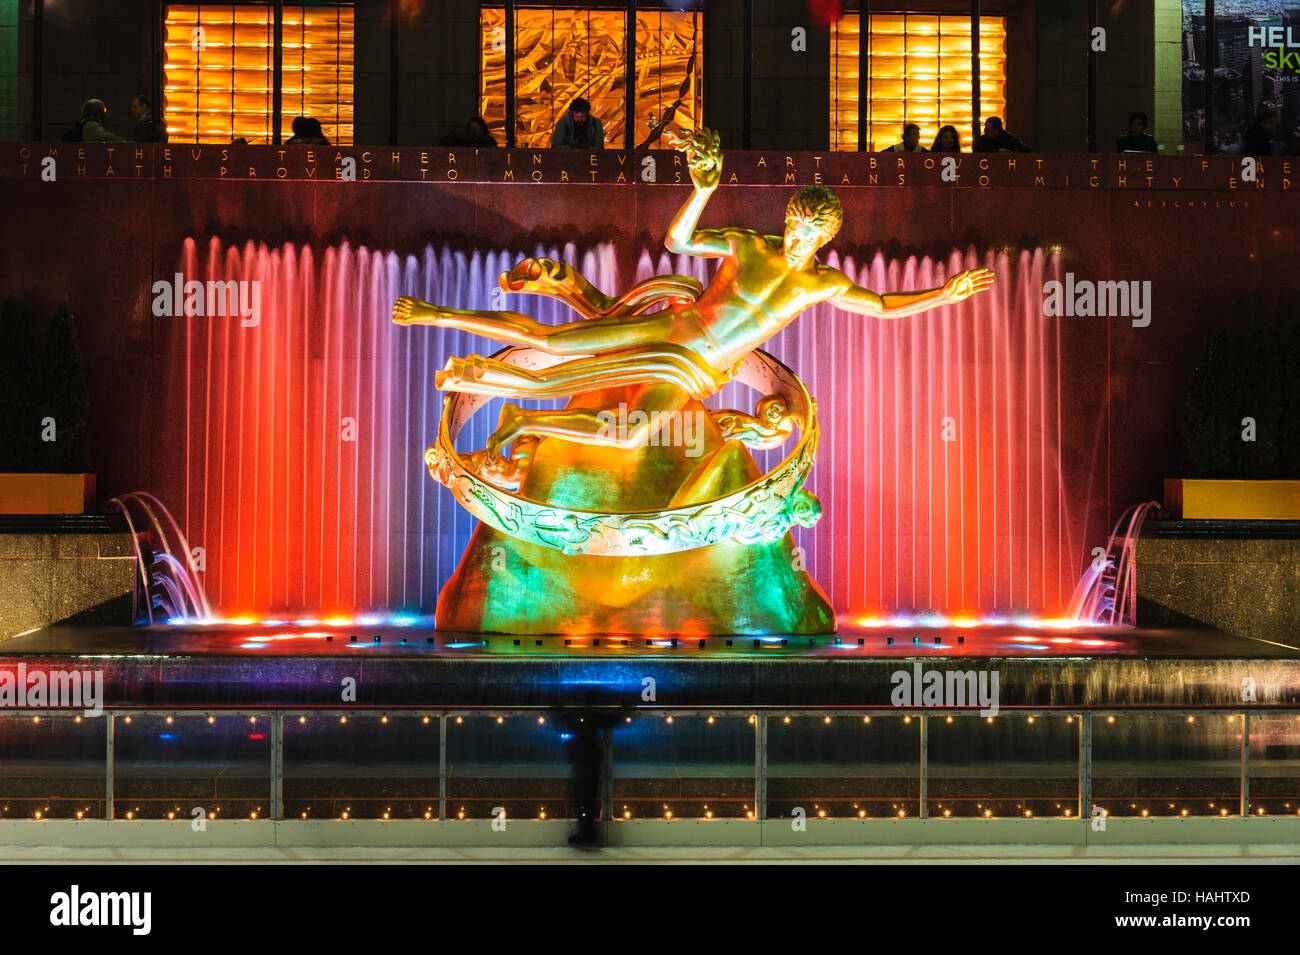 Manhattan, Rockefeller Center (Centre),New York City, NY, USA - Prometheus Sculpture de Paul Howard Manship, fontaine illuminée la nuit. Banque D'Images